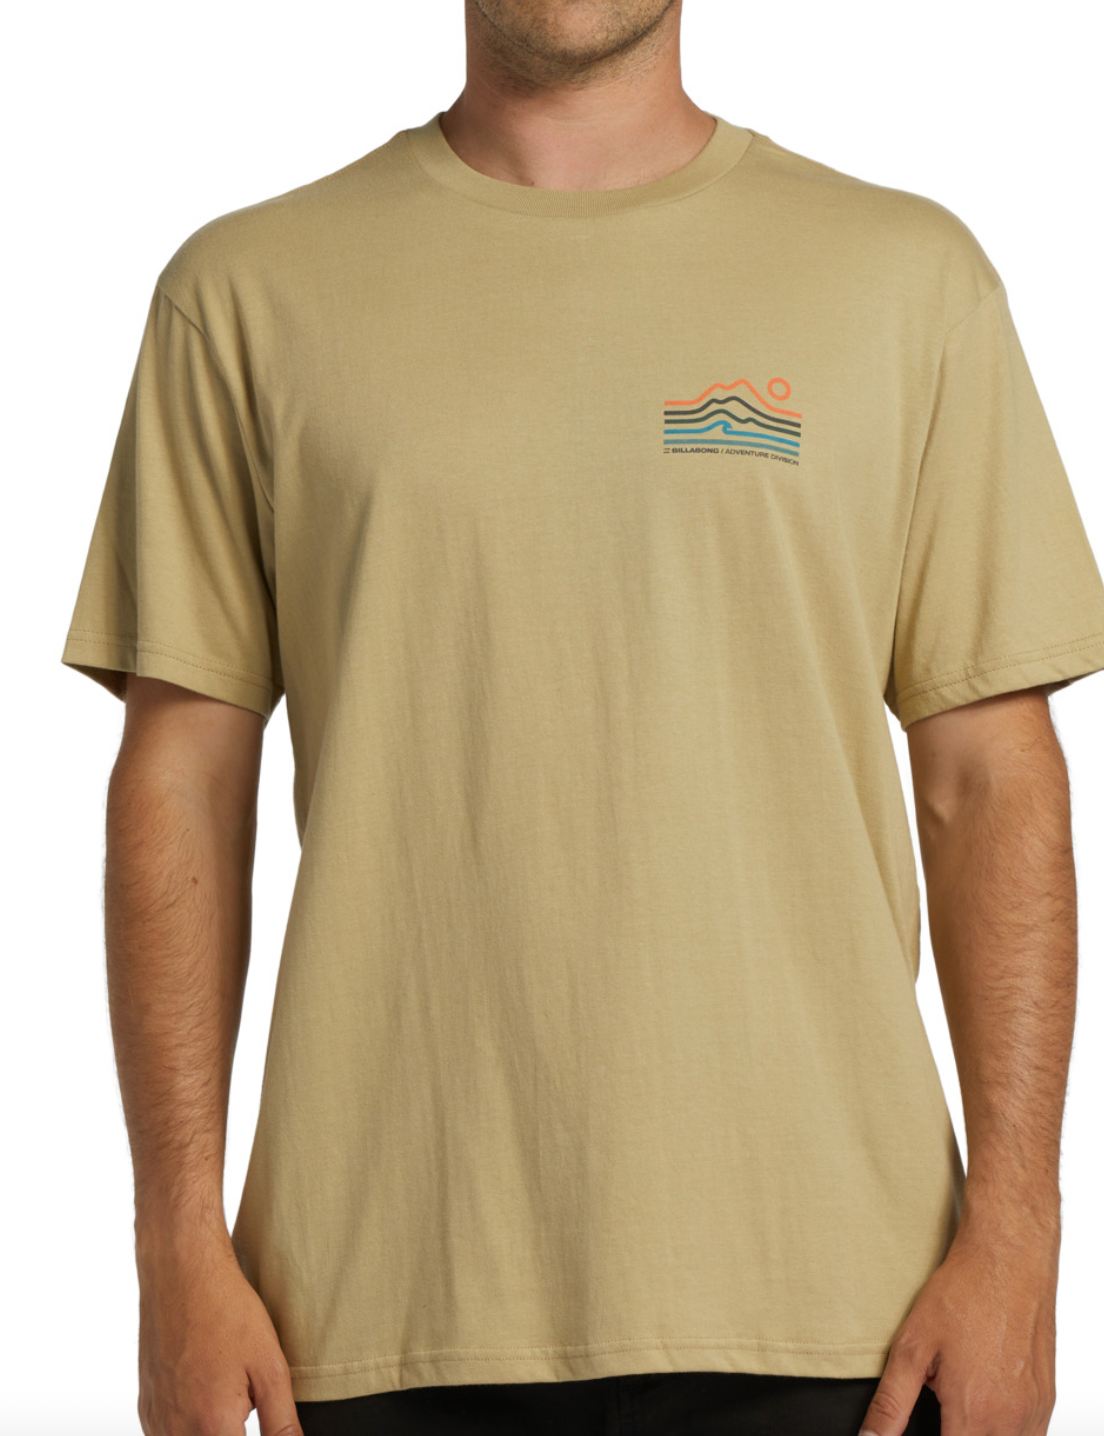 A/Div Peak Short Sleeve T-Shirt - SAND DUNE